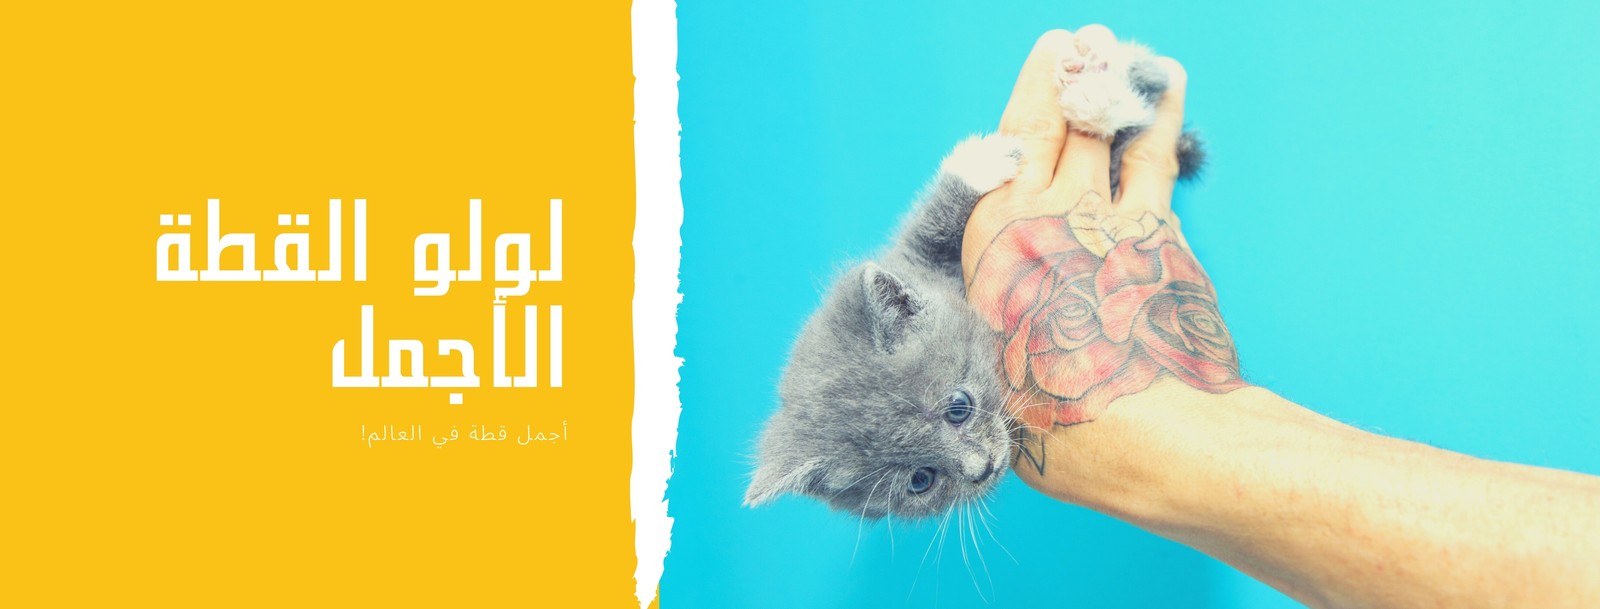 غلاف فيسبوك أخضر ليموني مخطط حيوان أليف قطة